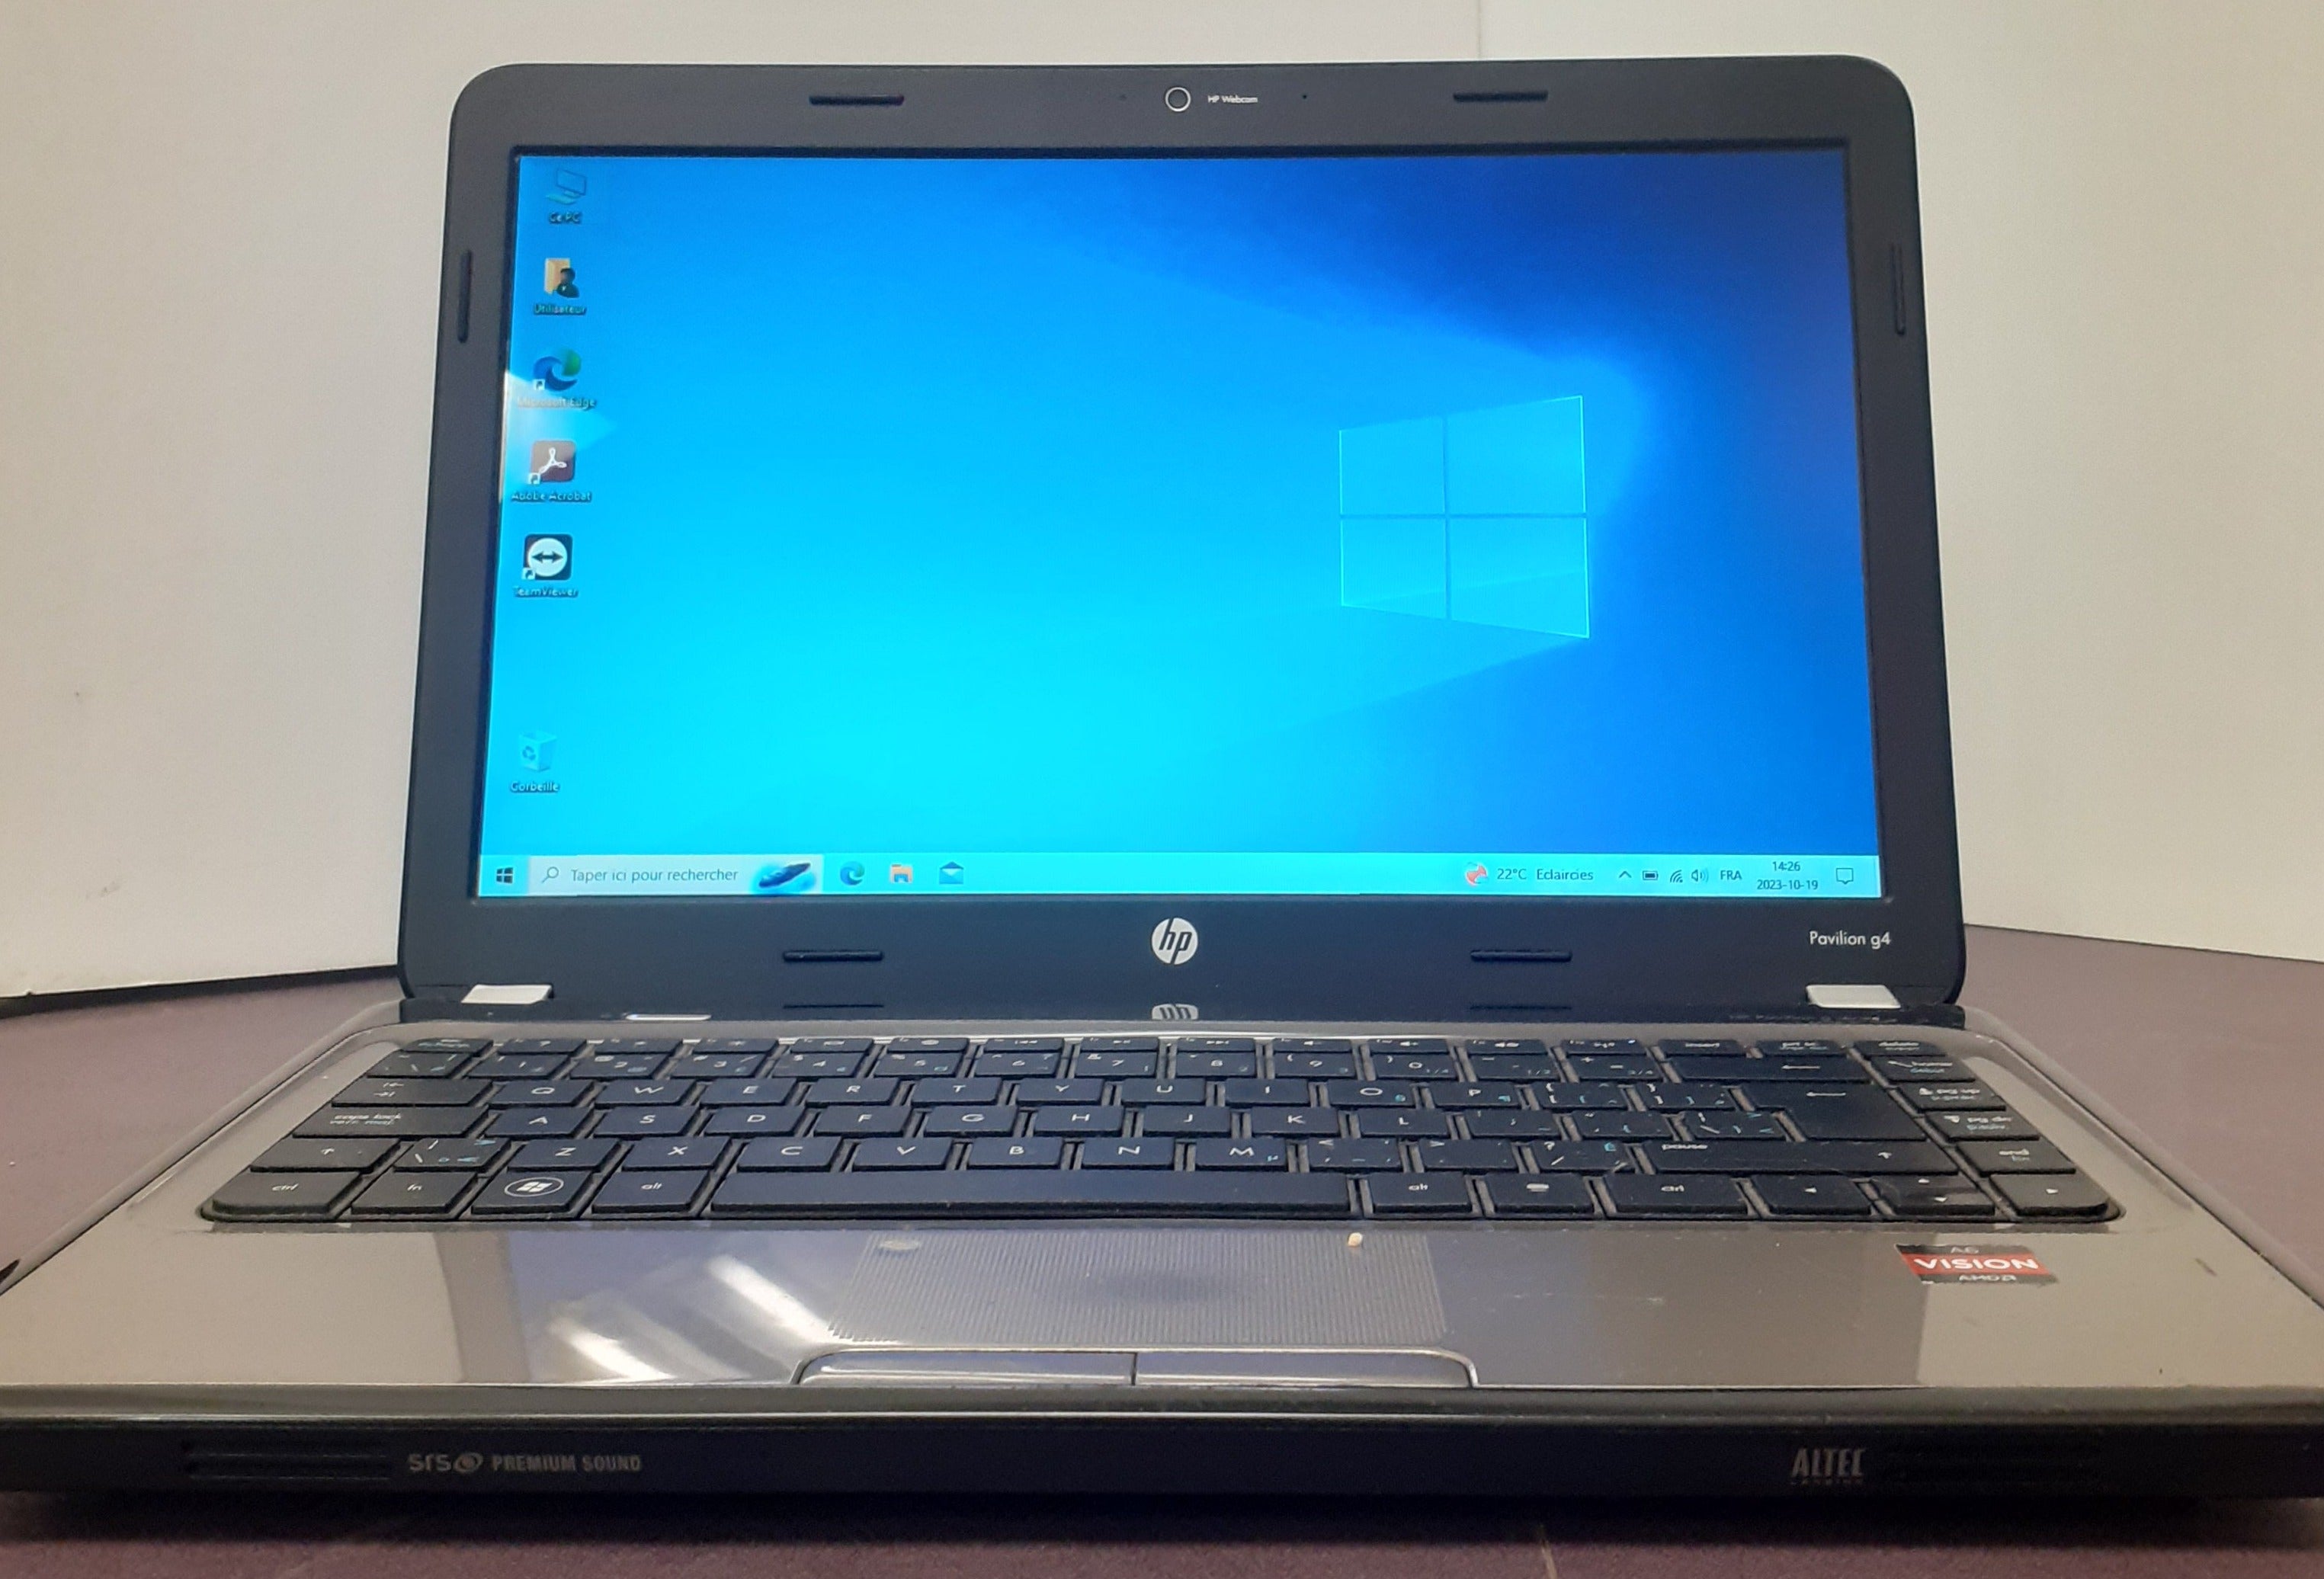 Refurbished Laptop - HP Pavilion G4